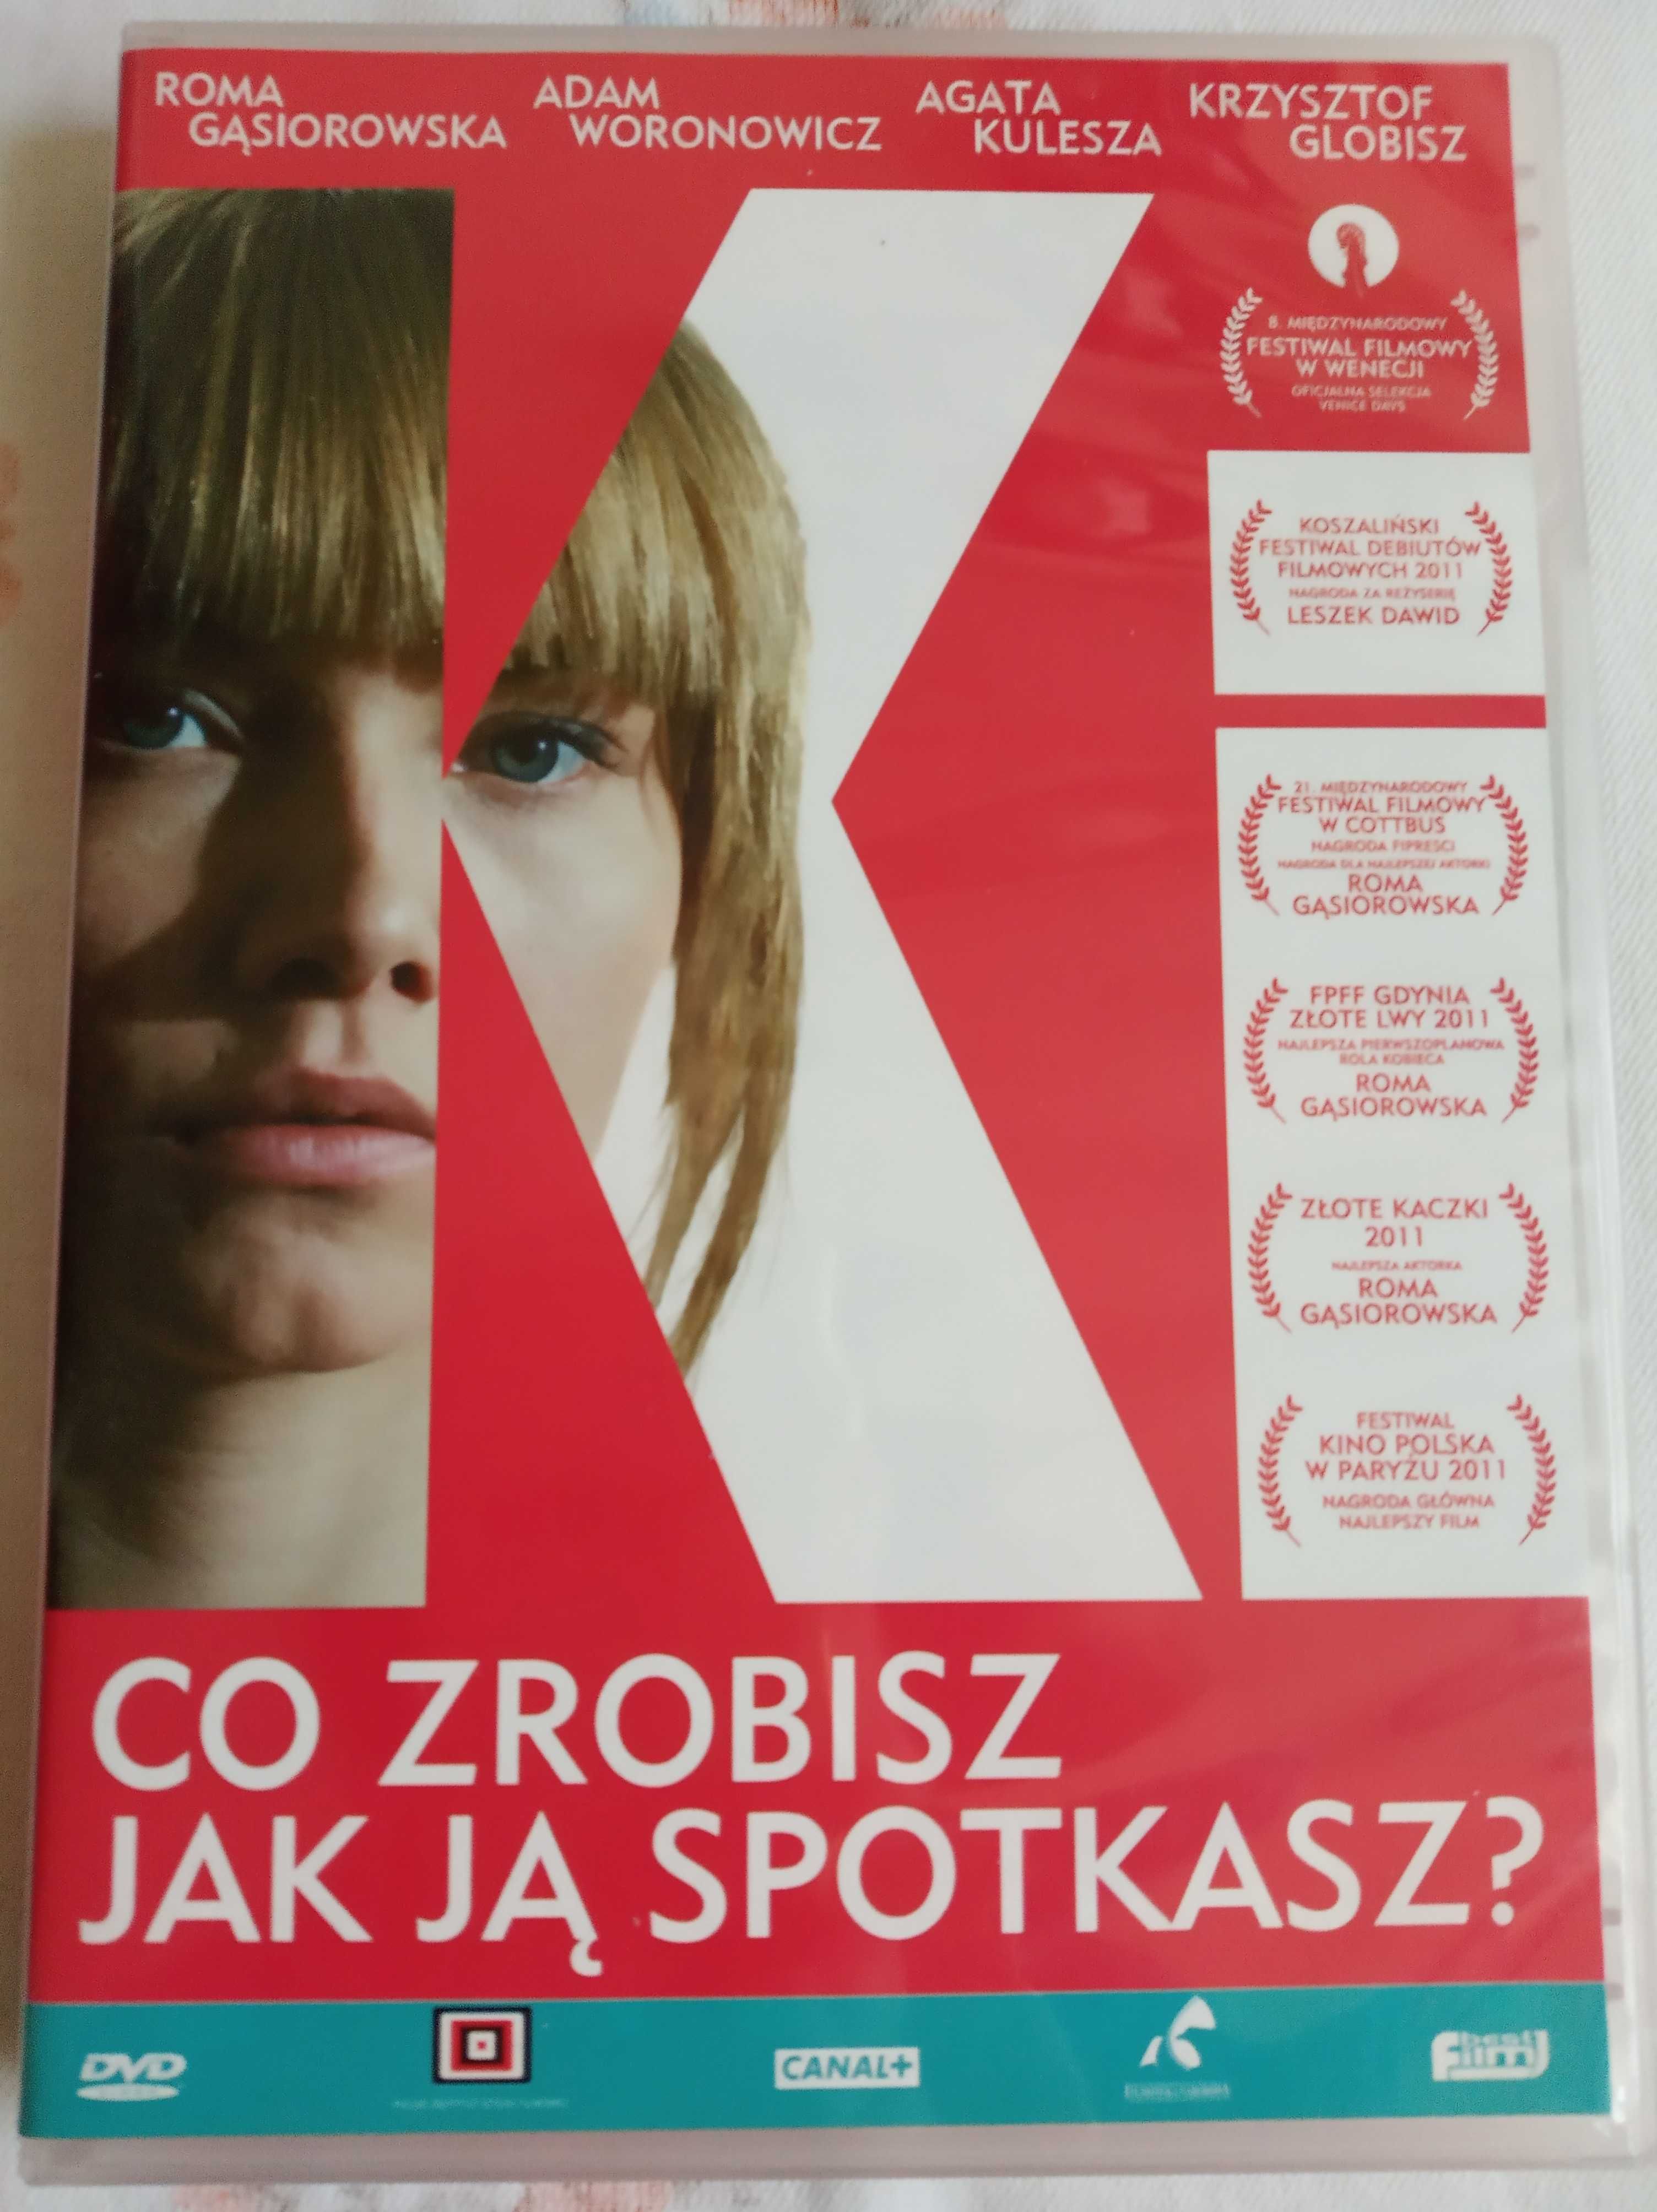 "Co zrobisz jak ją spotkasz" dvd Gąsiorowska, Woronowicz, Kulesza